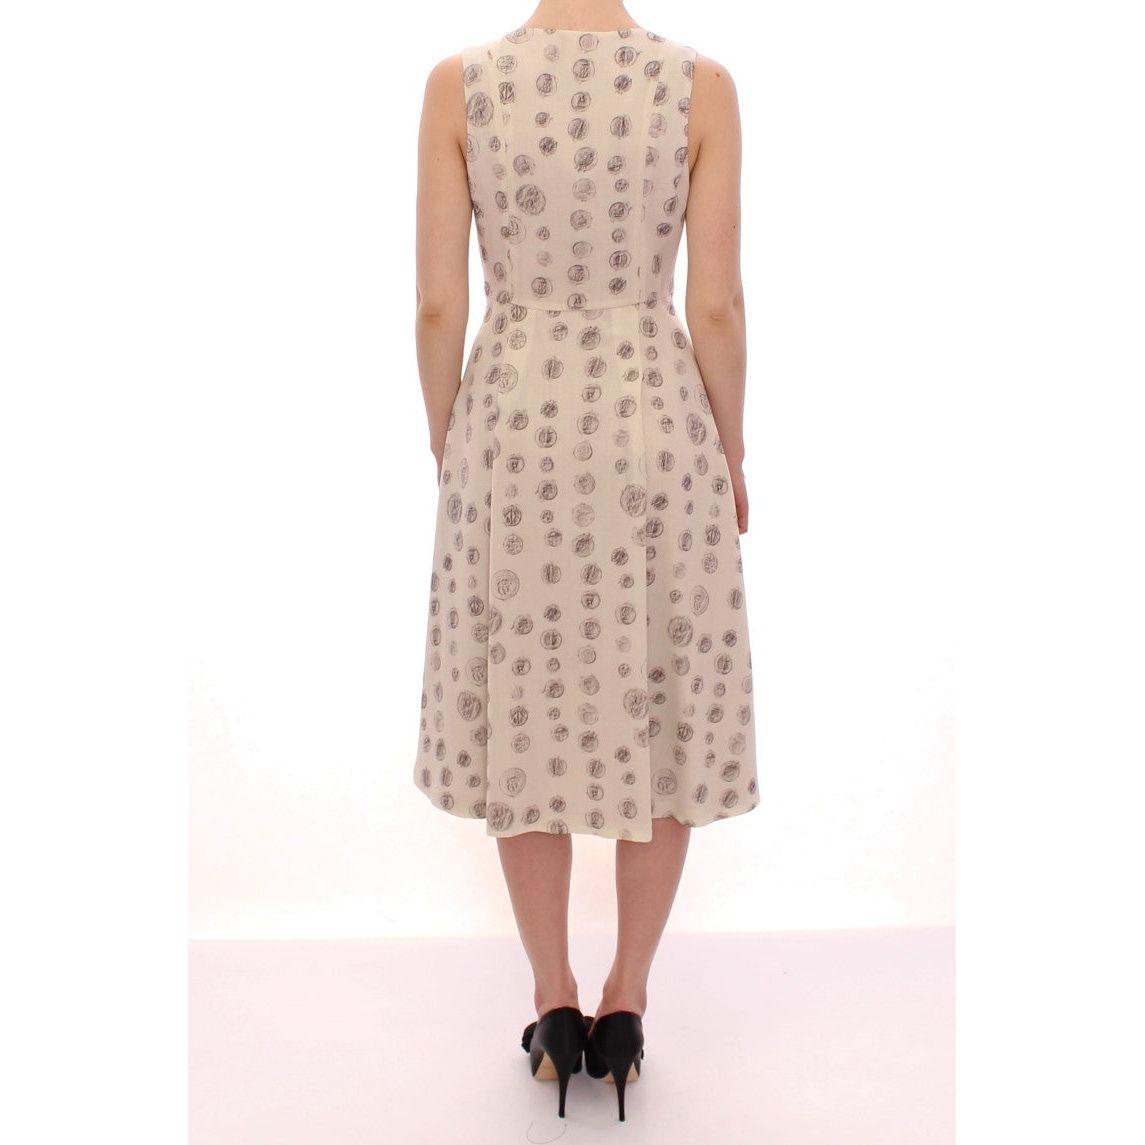 Andrea Incontri Elegant White Wool Shift Dress with Gray Print white-printed-shift-v-neck-sheath-dress